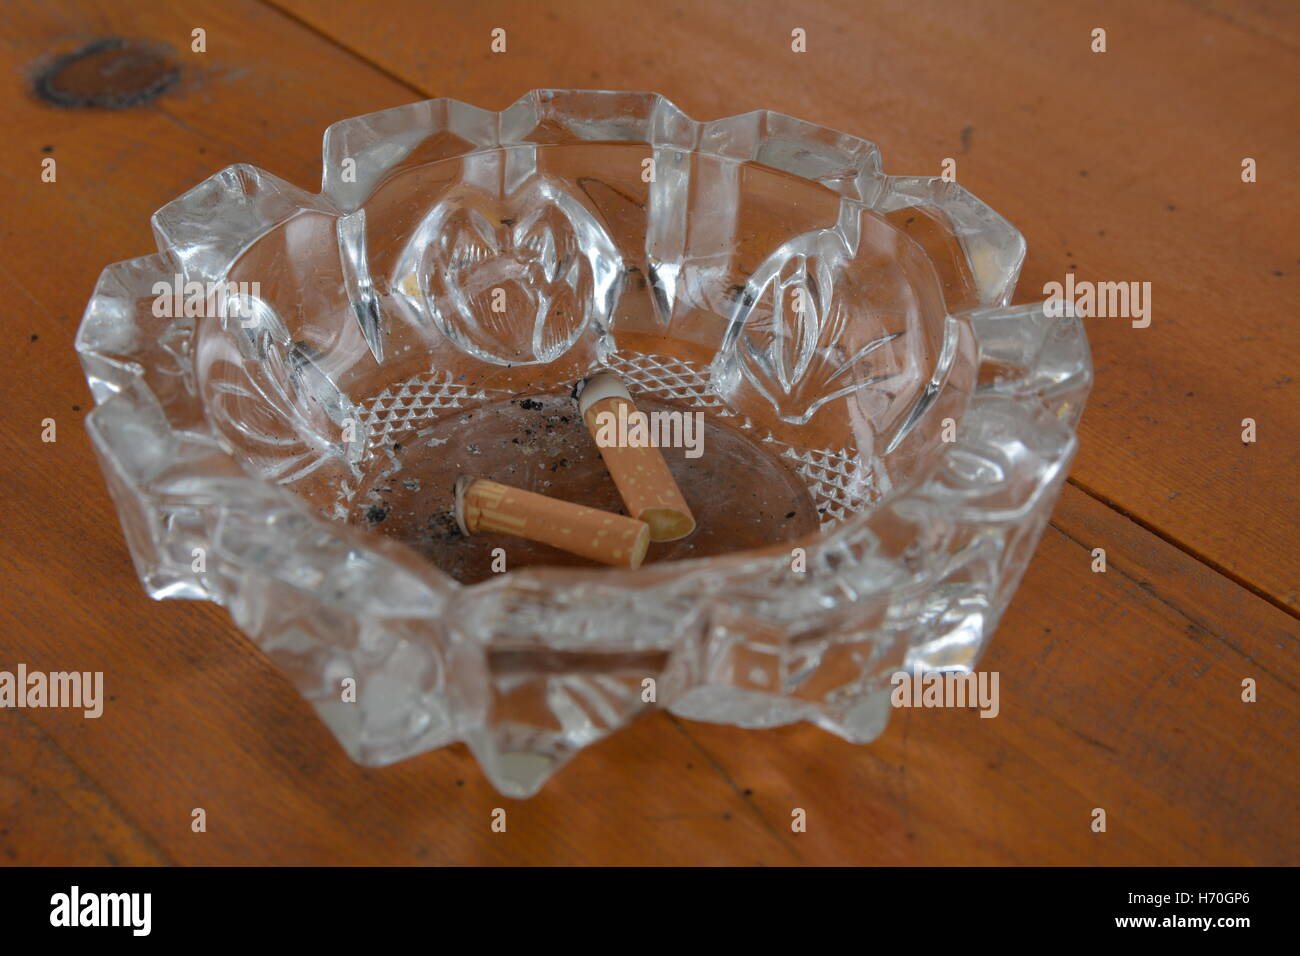 Aschenbecher und Zigaretten, auf einem Tisch, Asche, Tablett, Glas, sucht,  b Stockfotografie - Alamy